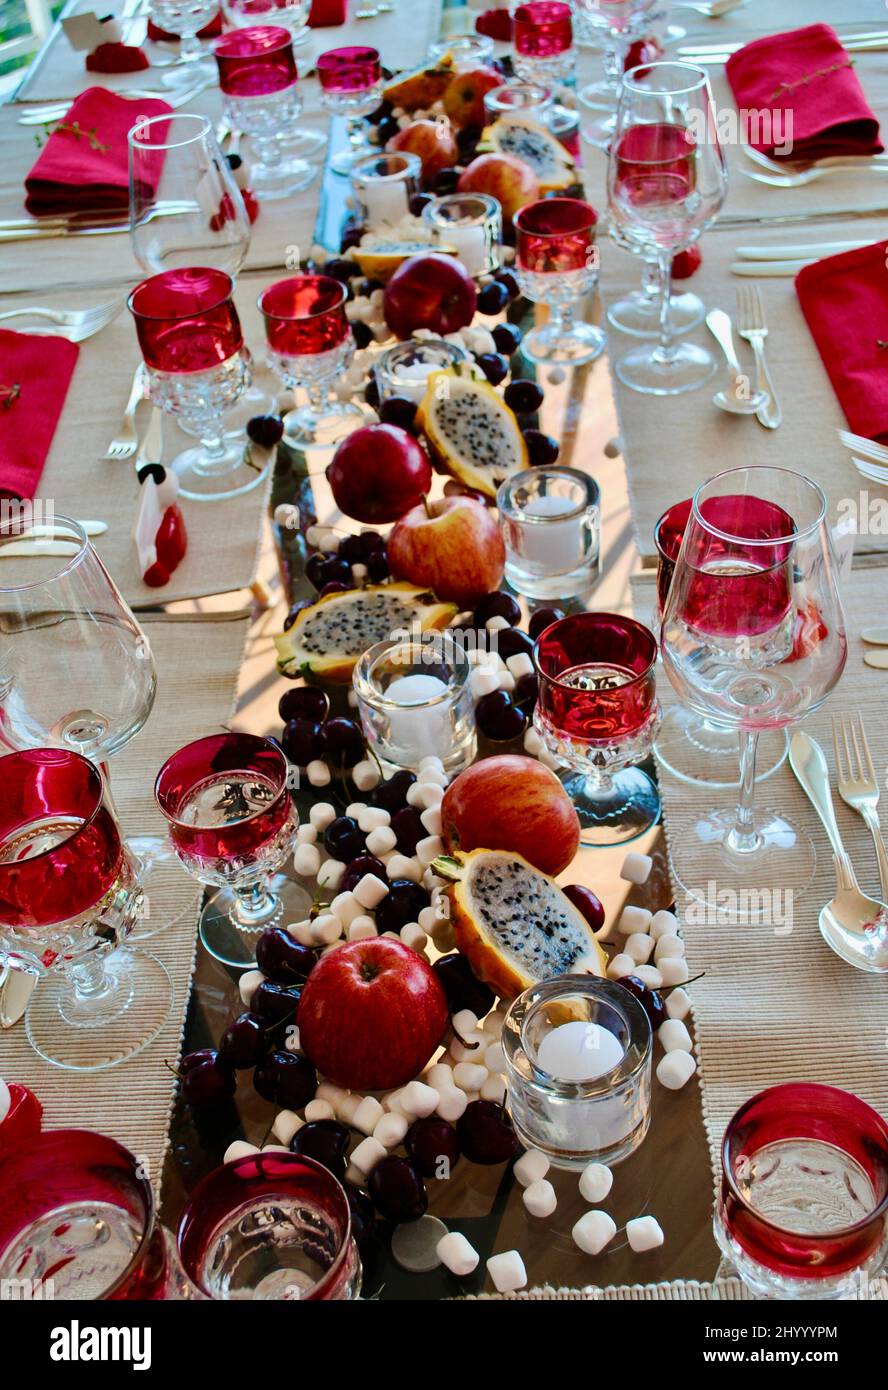 Table à dîner décorée de pommes, de fruits dragon, de guimauves et de bougeoirs finlandais Marimekko Kivi votifs. Banque D'Images